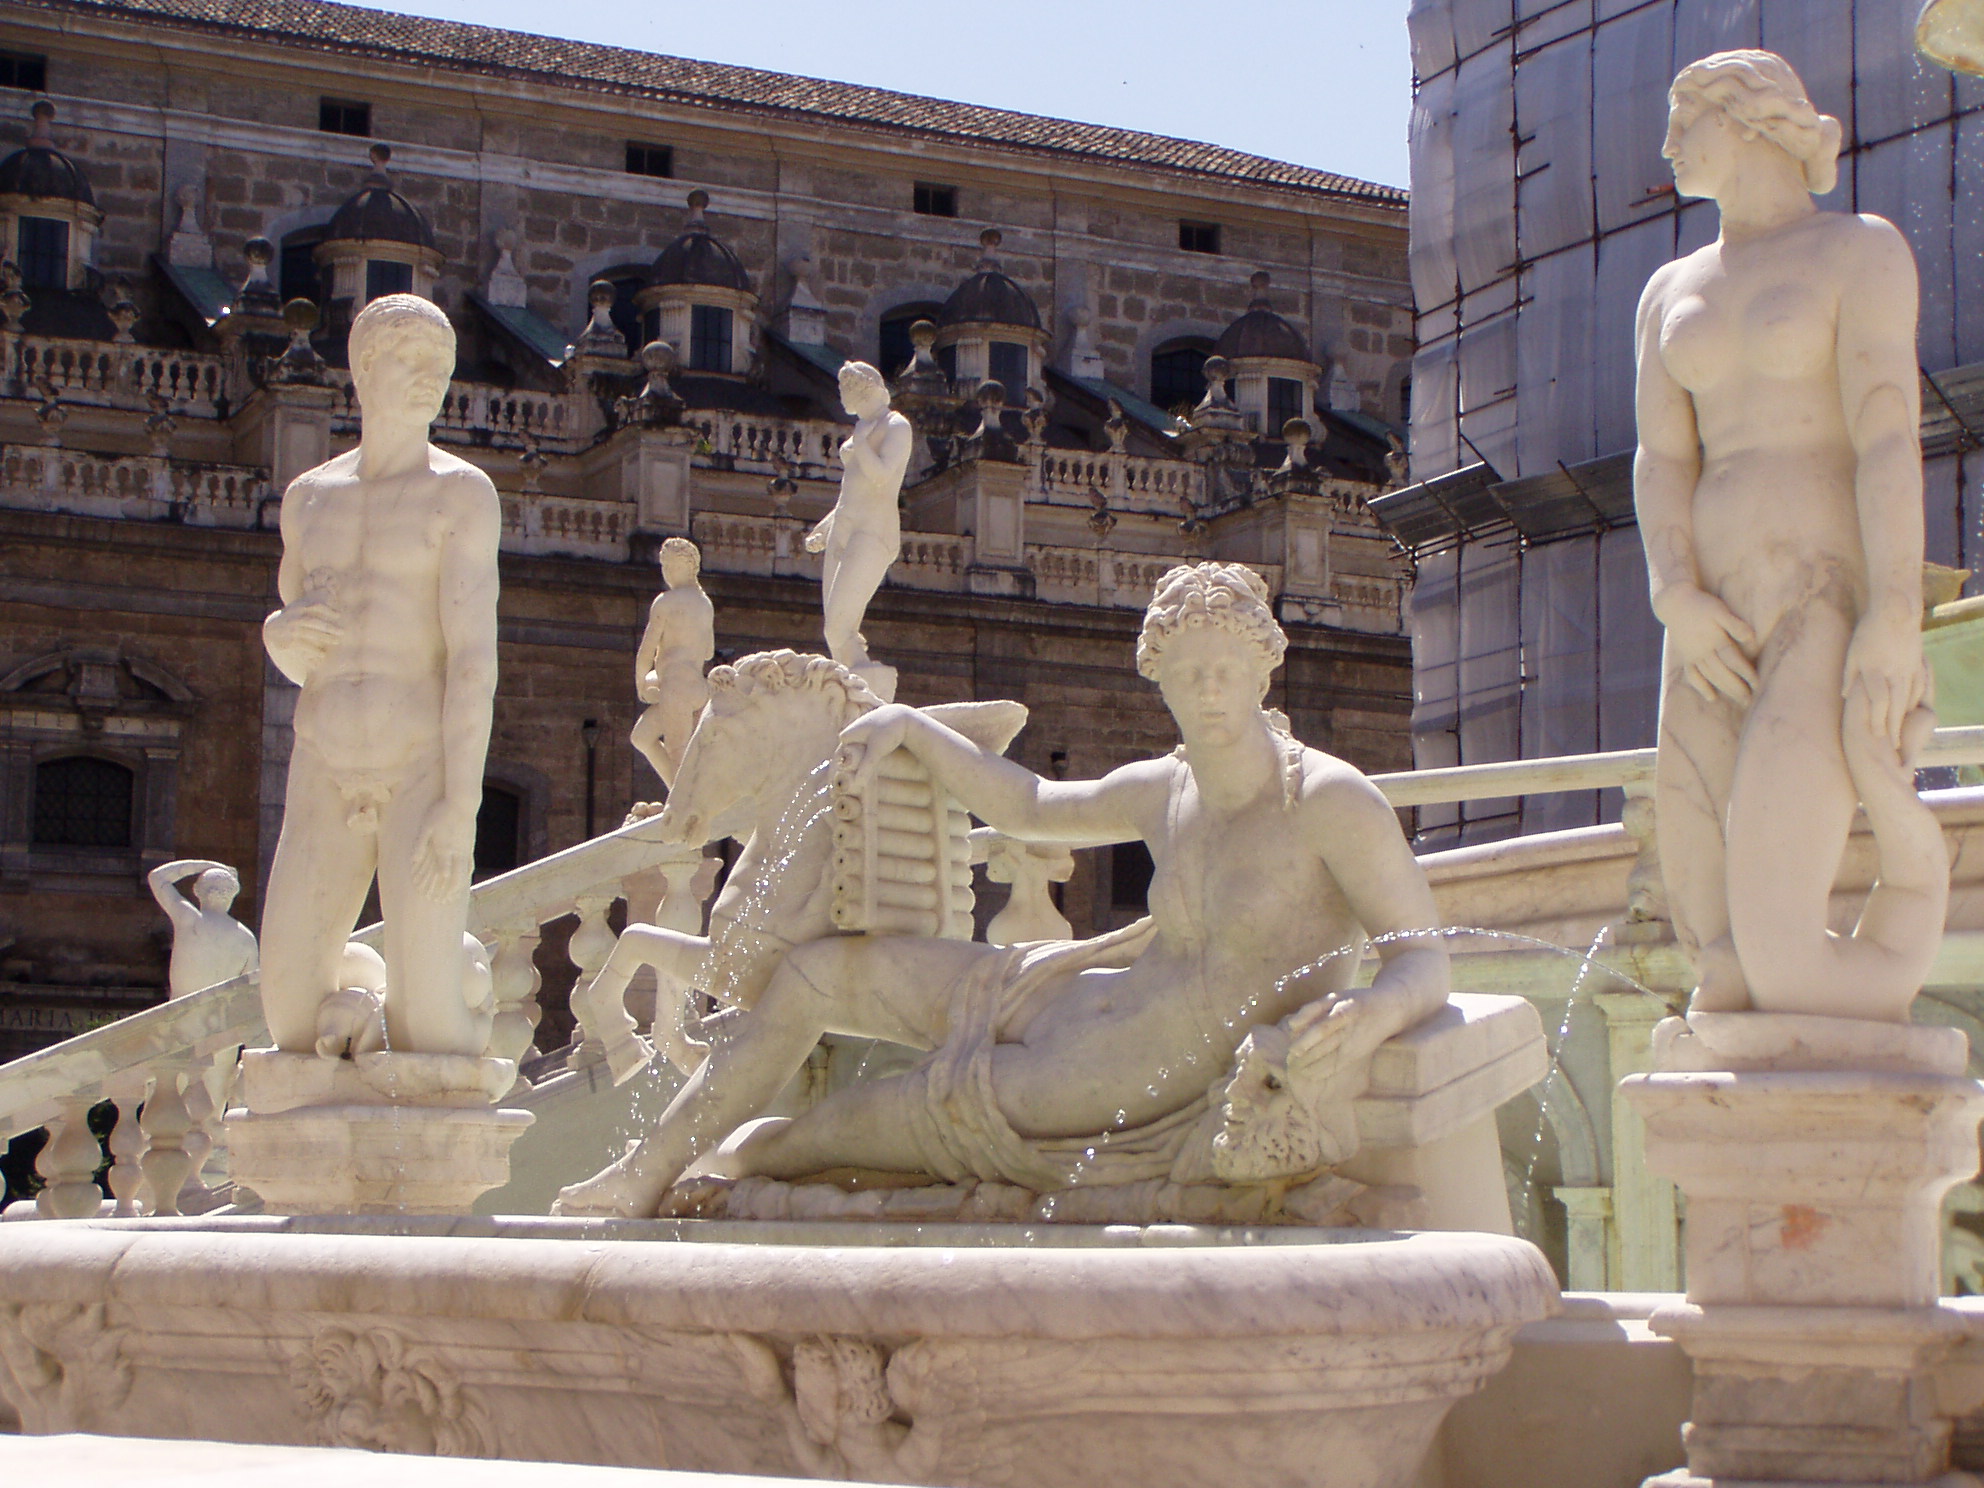 File:Palermo piazza pretoria.jpg - Wikimedia Commons